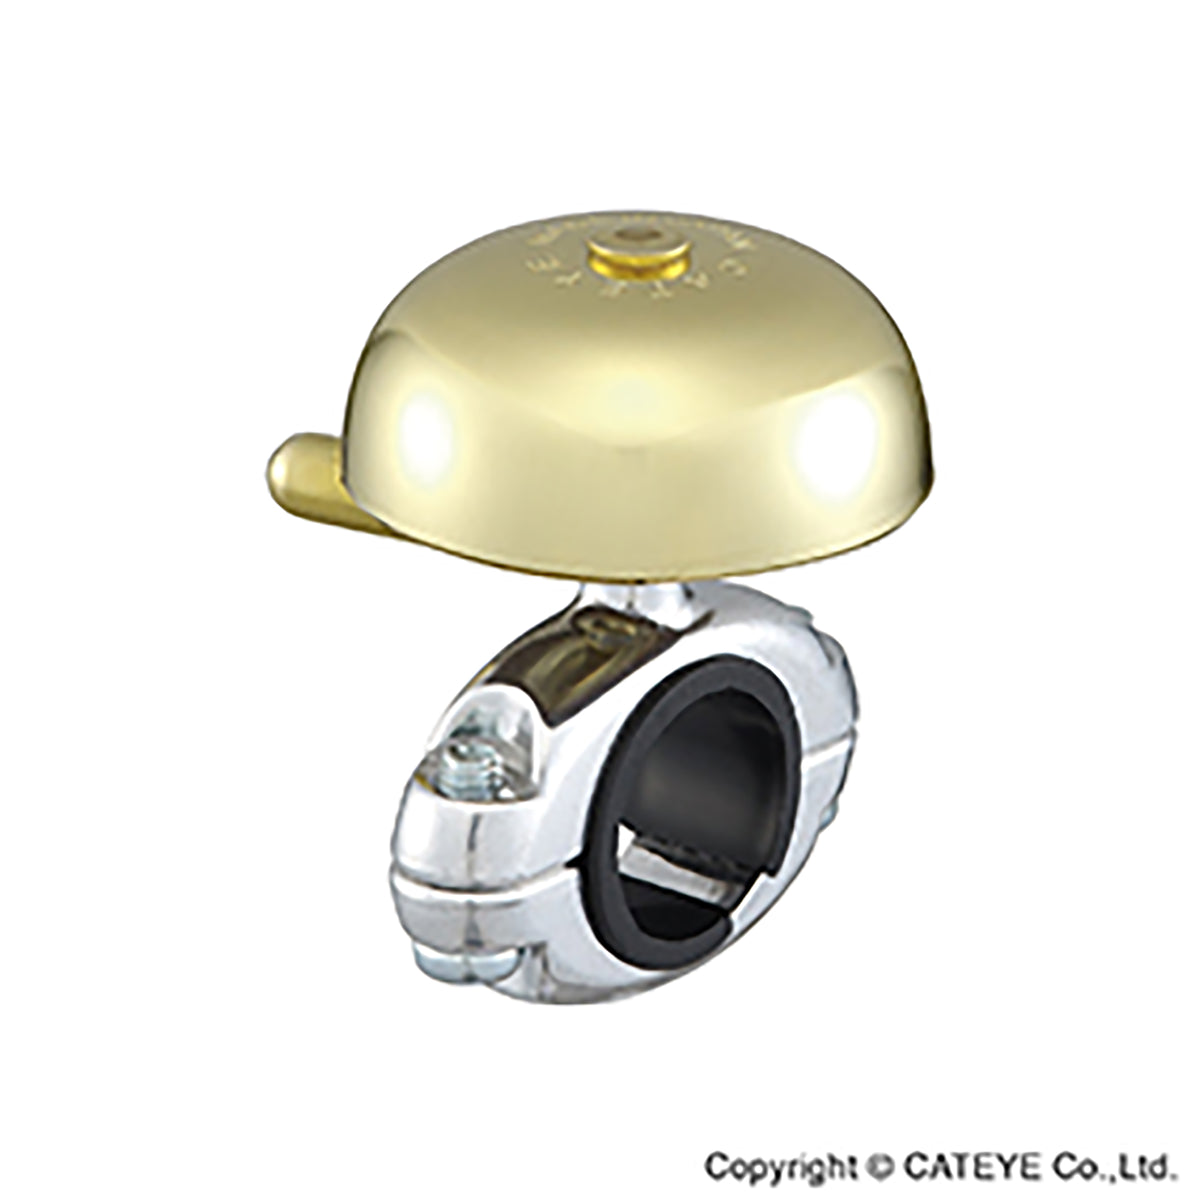 Cateye Oh-2200 Yamabiko Brass Bell